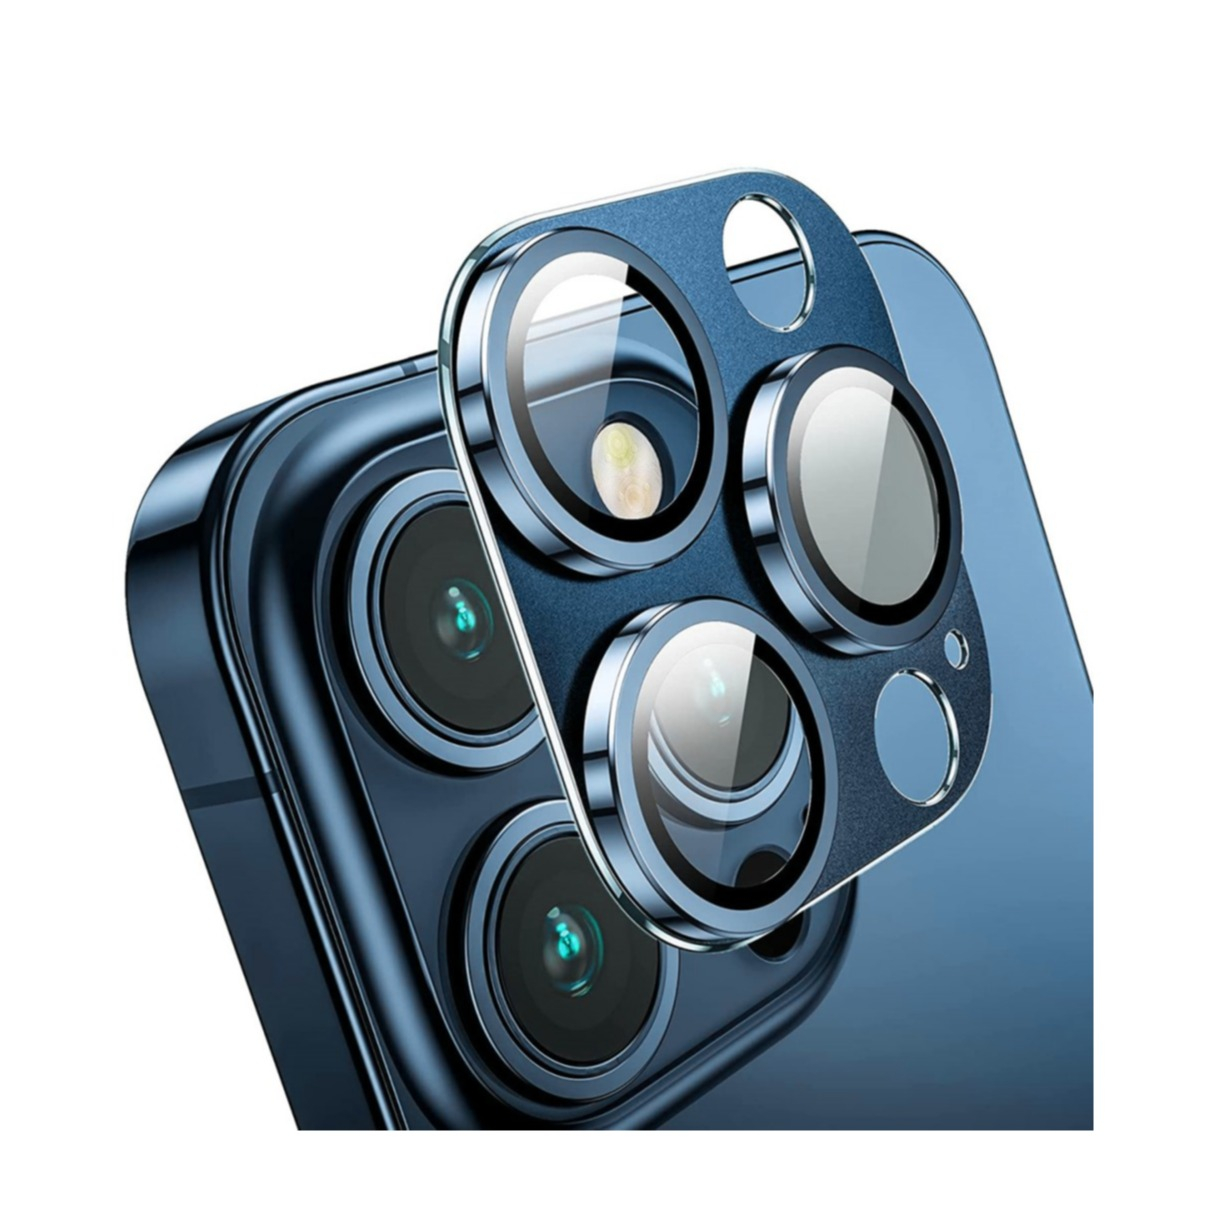 iPhone 15 Pro / iPhone 15 Pro Max Alu Ultra Clear Kamera Objektiv Protector  Vollschutz mit Panzer Glas - Blau